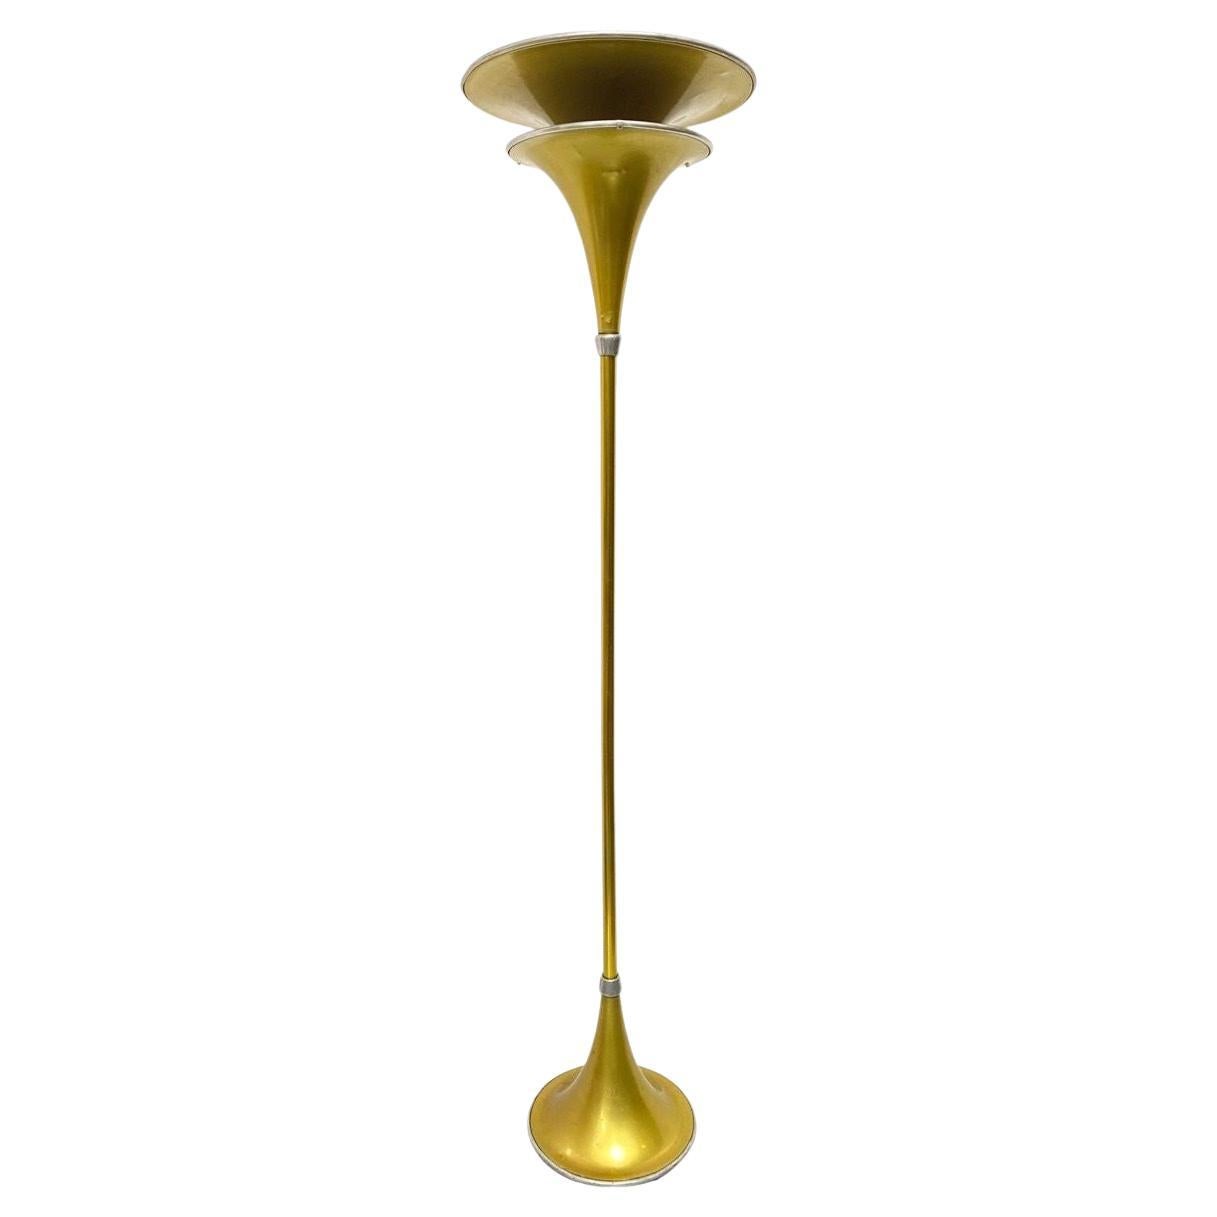 Art Deco Anodized Gold-Tone Spun Aluminum Torchiere Floor Lamp For Sale